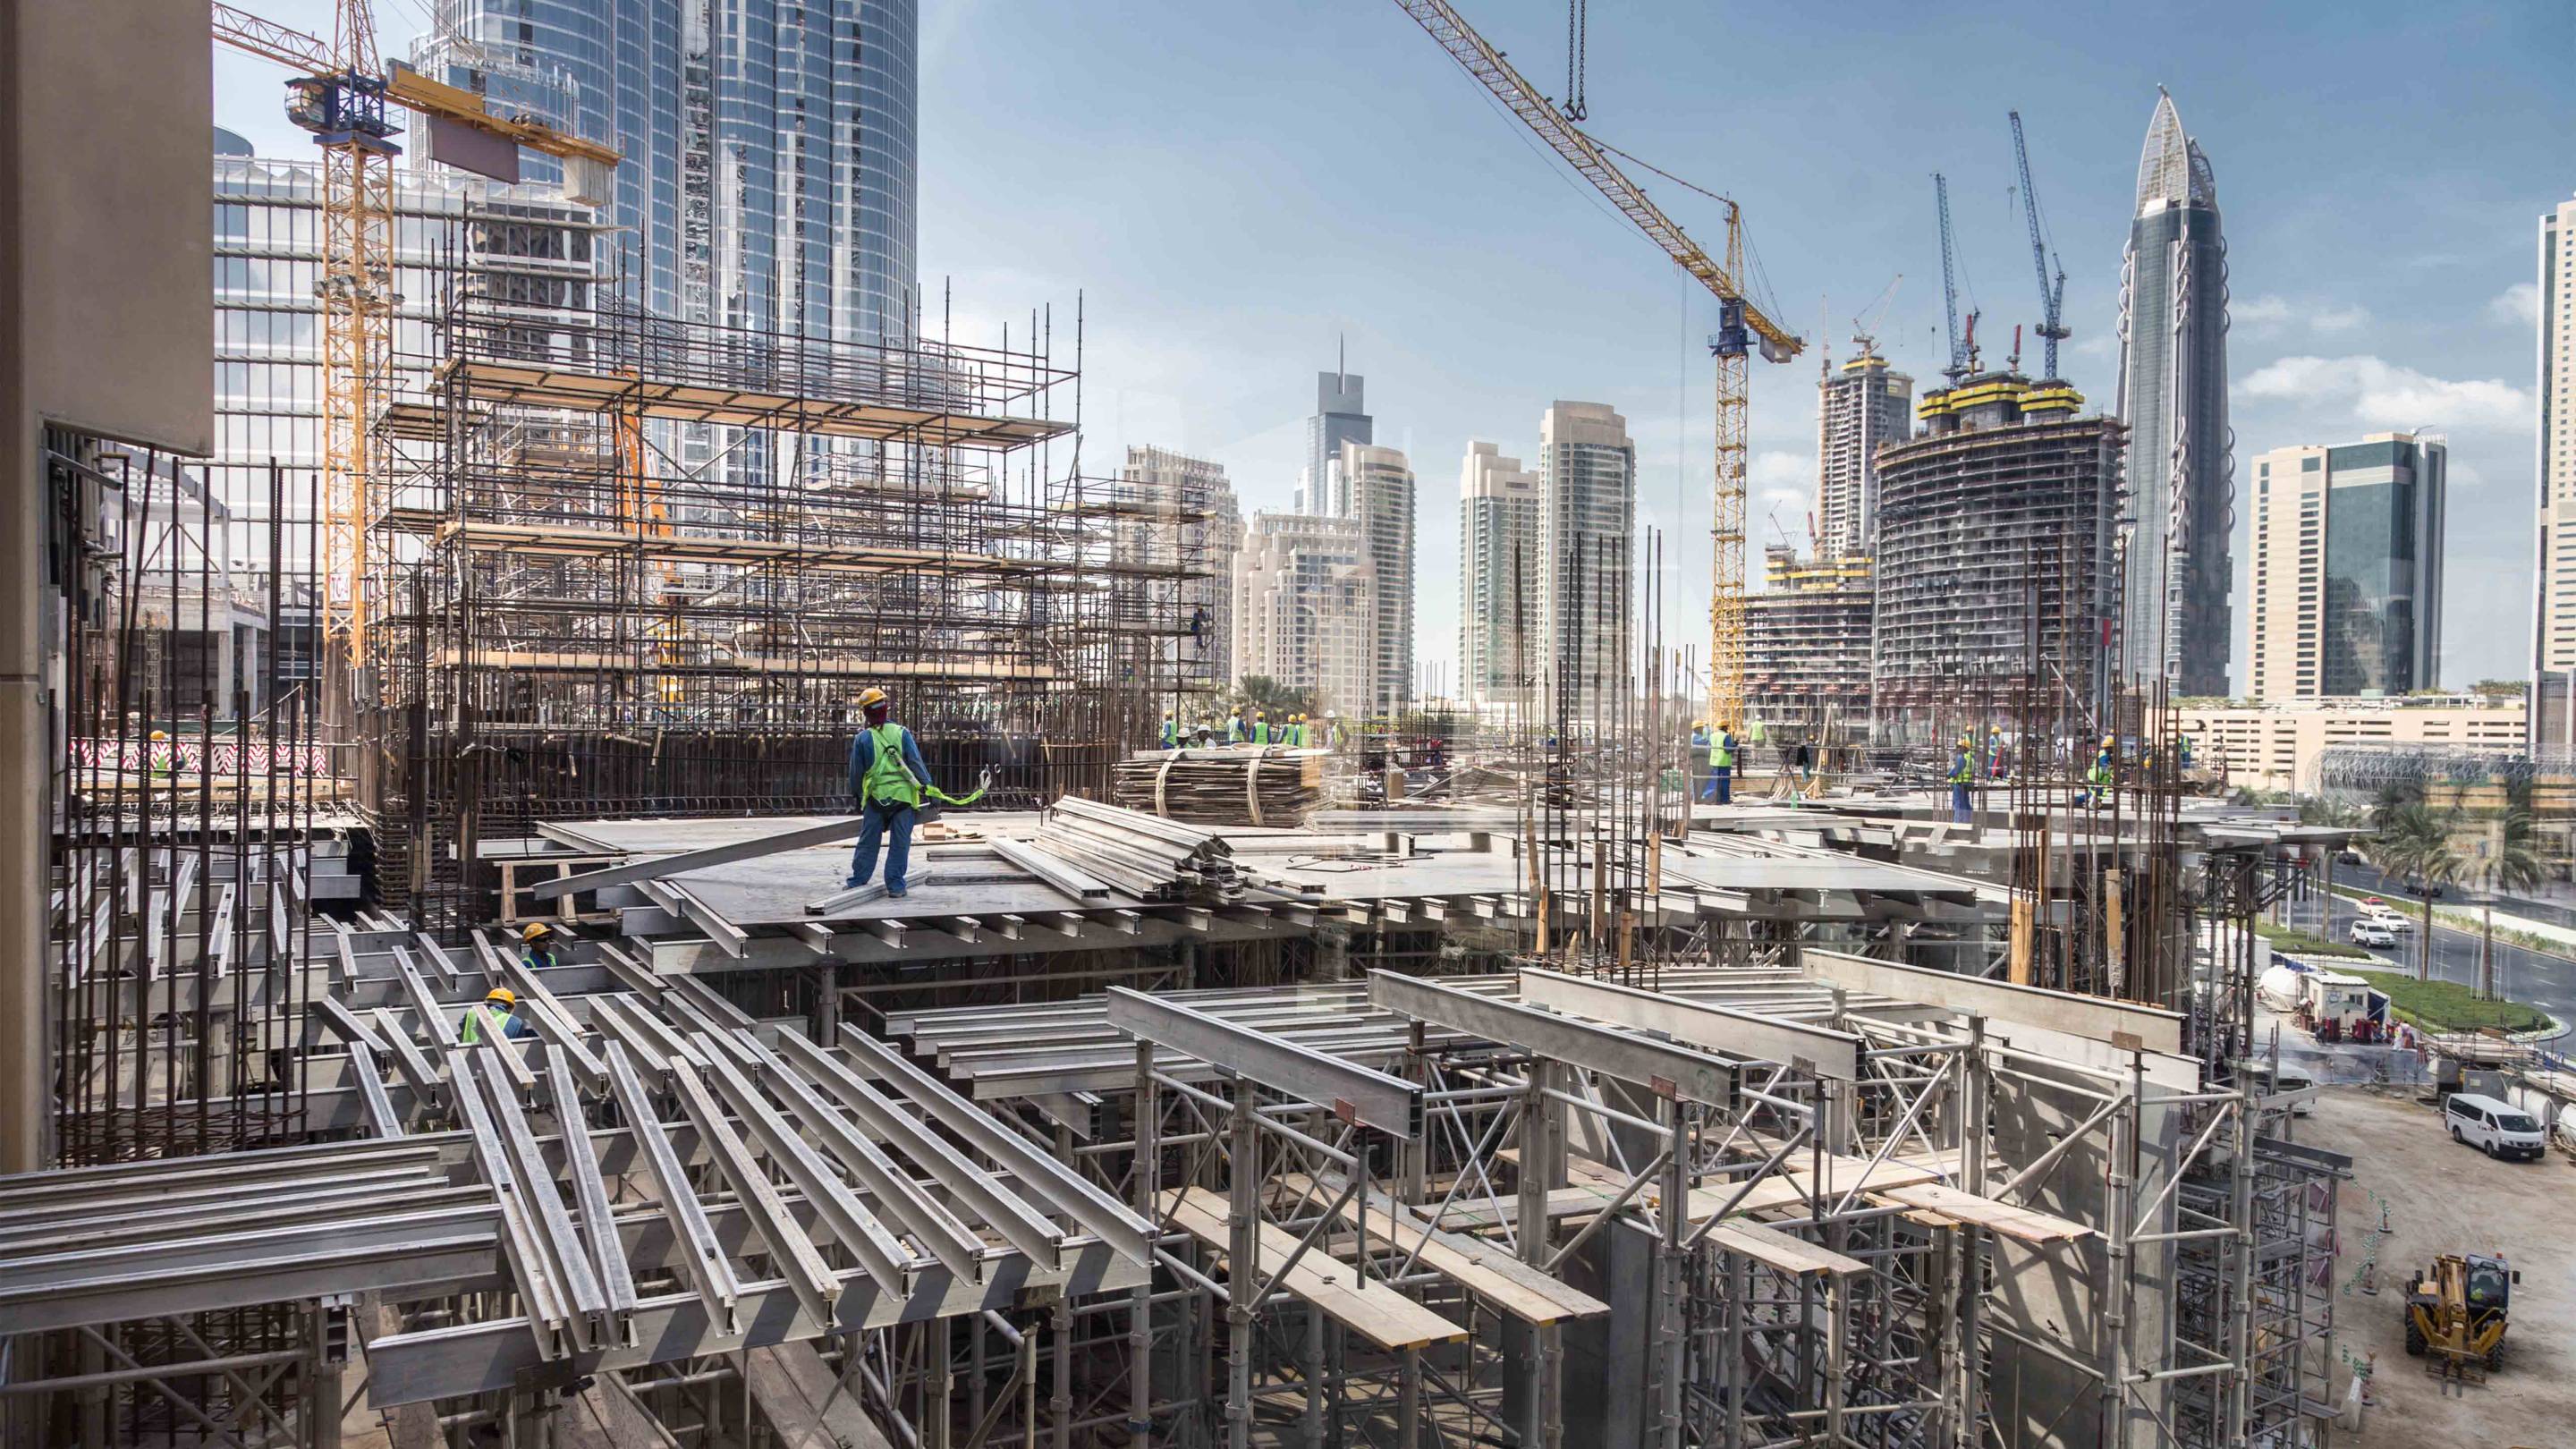 Construction site of a skyscraper in Dubai